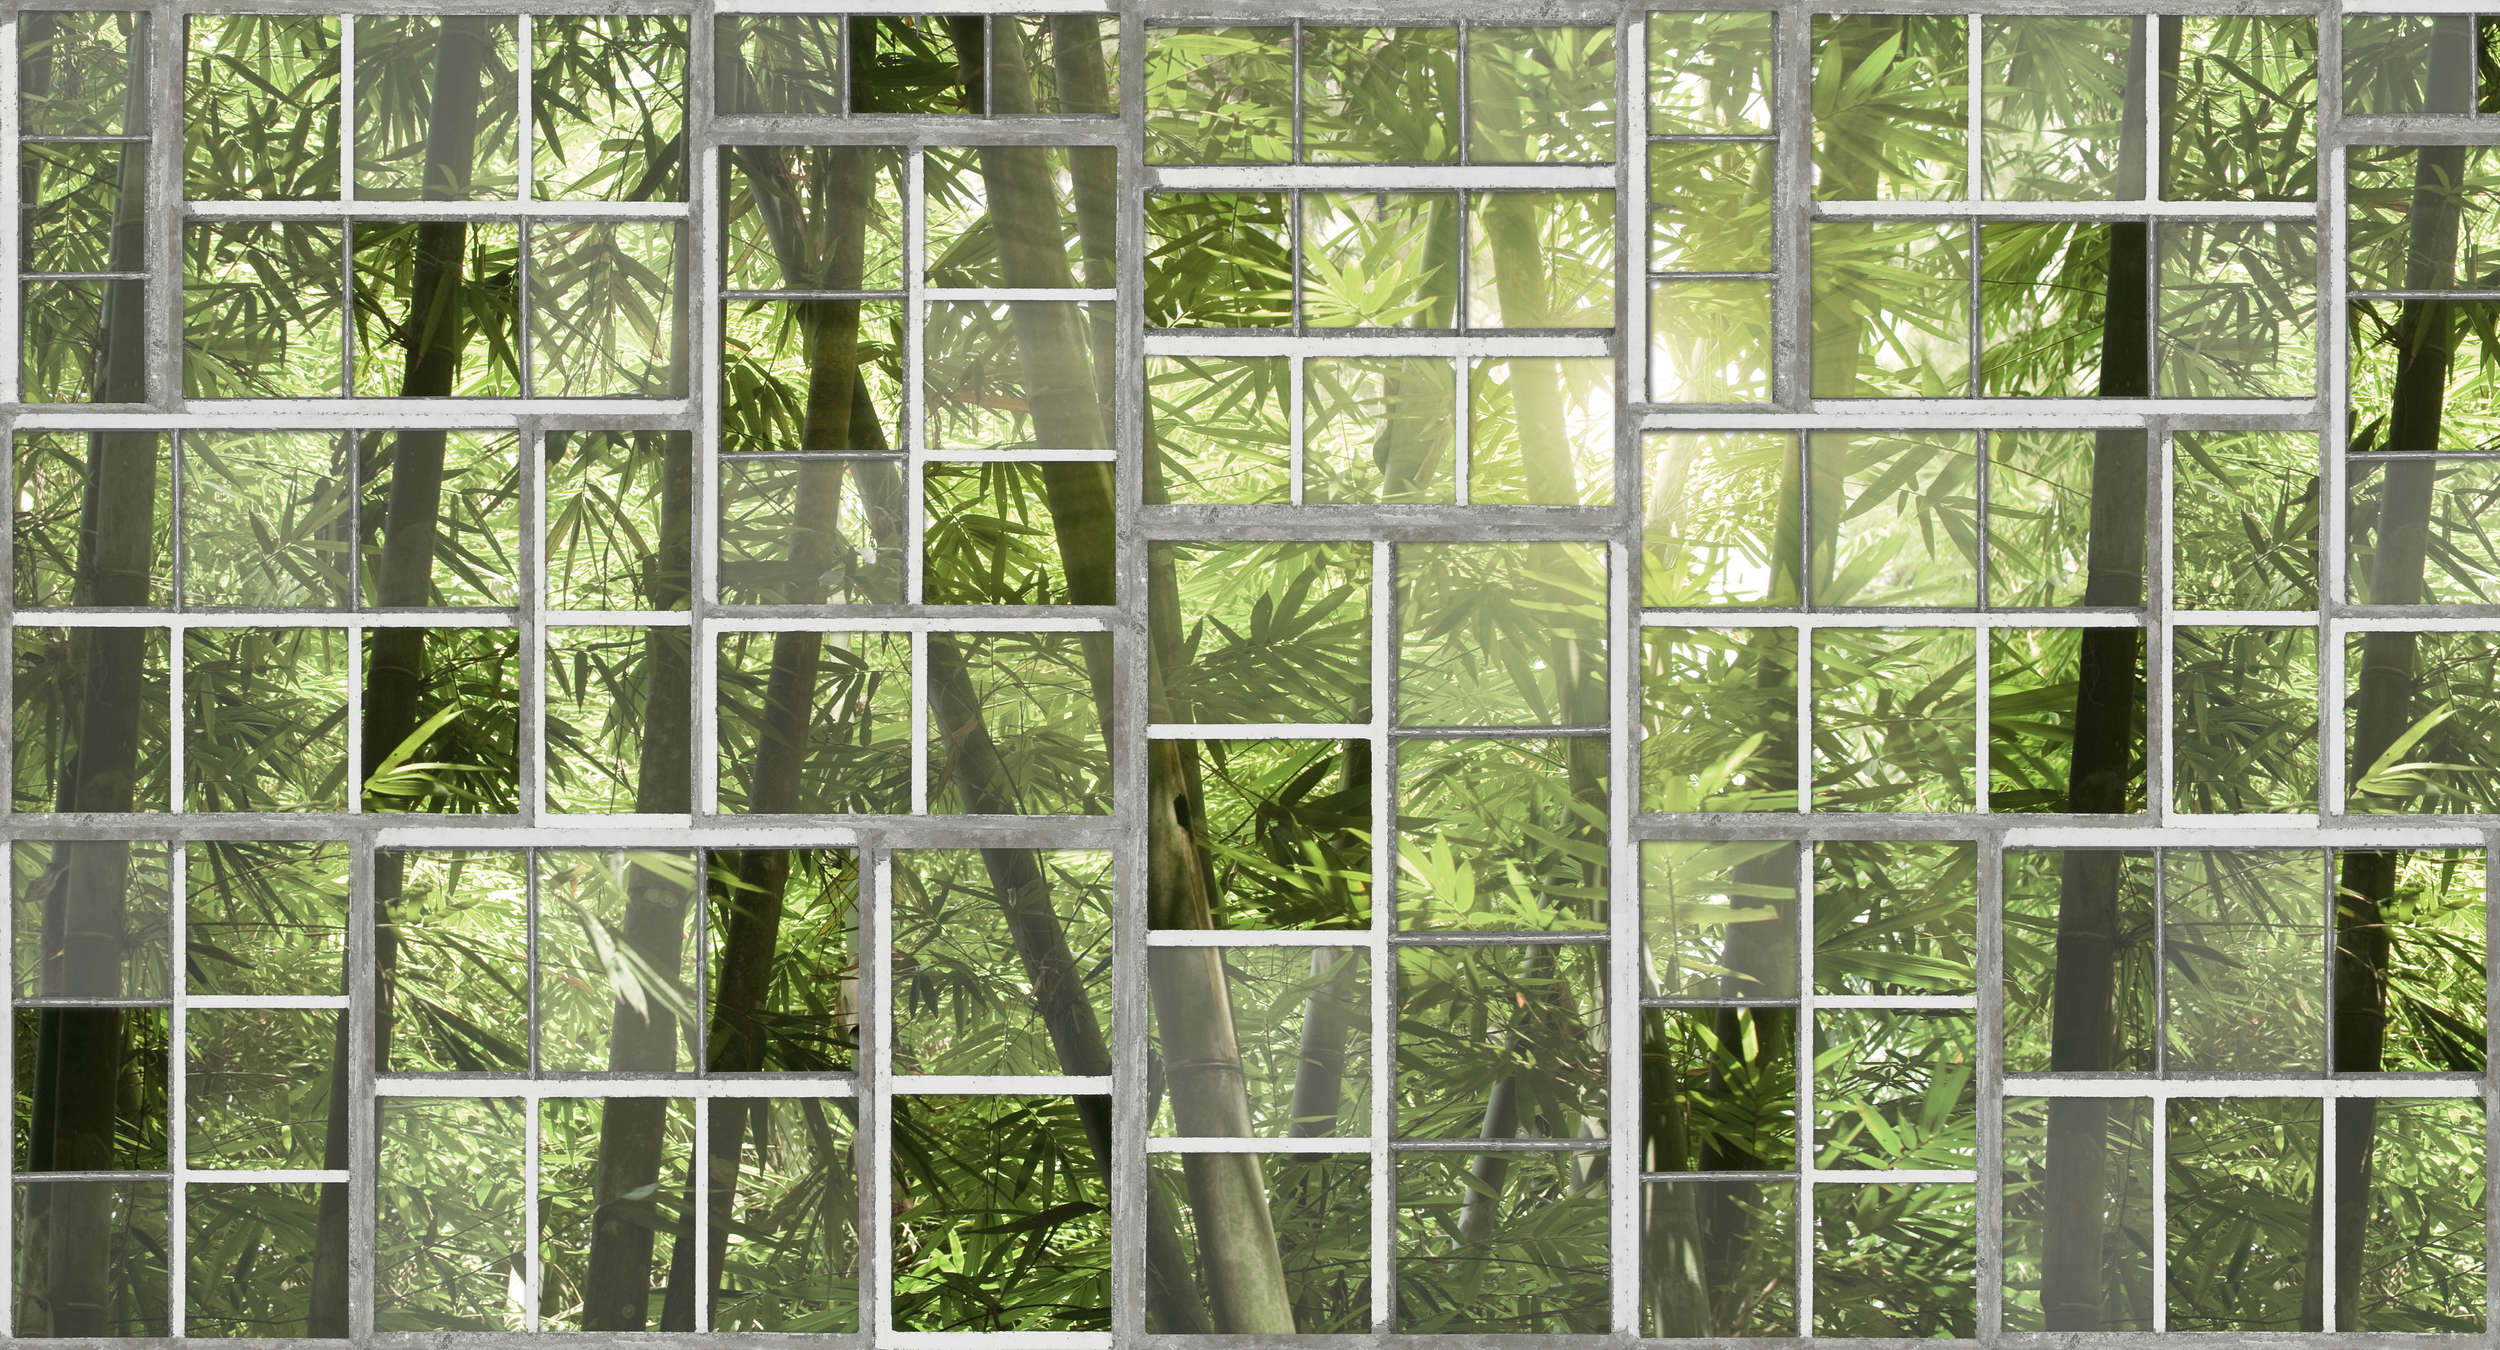             Fototapete Fenster mit Dschungel-Ausblick, Retro-Look – Grün, Grau, Weiß
        